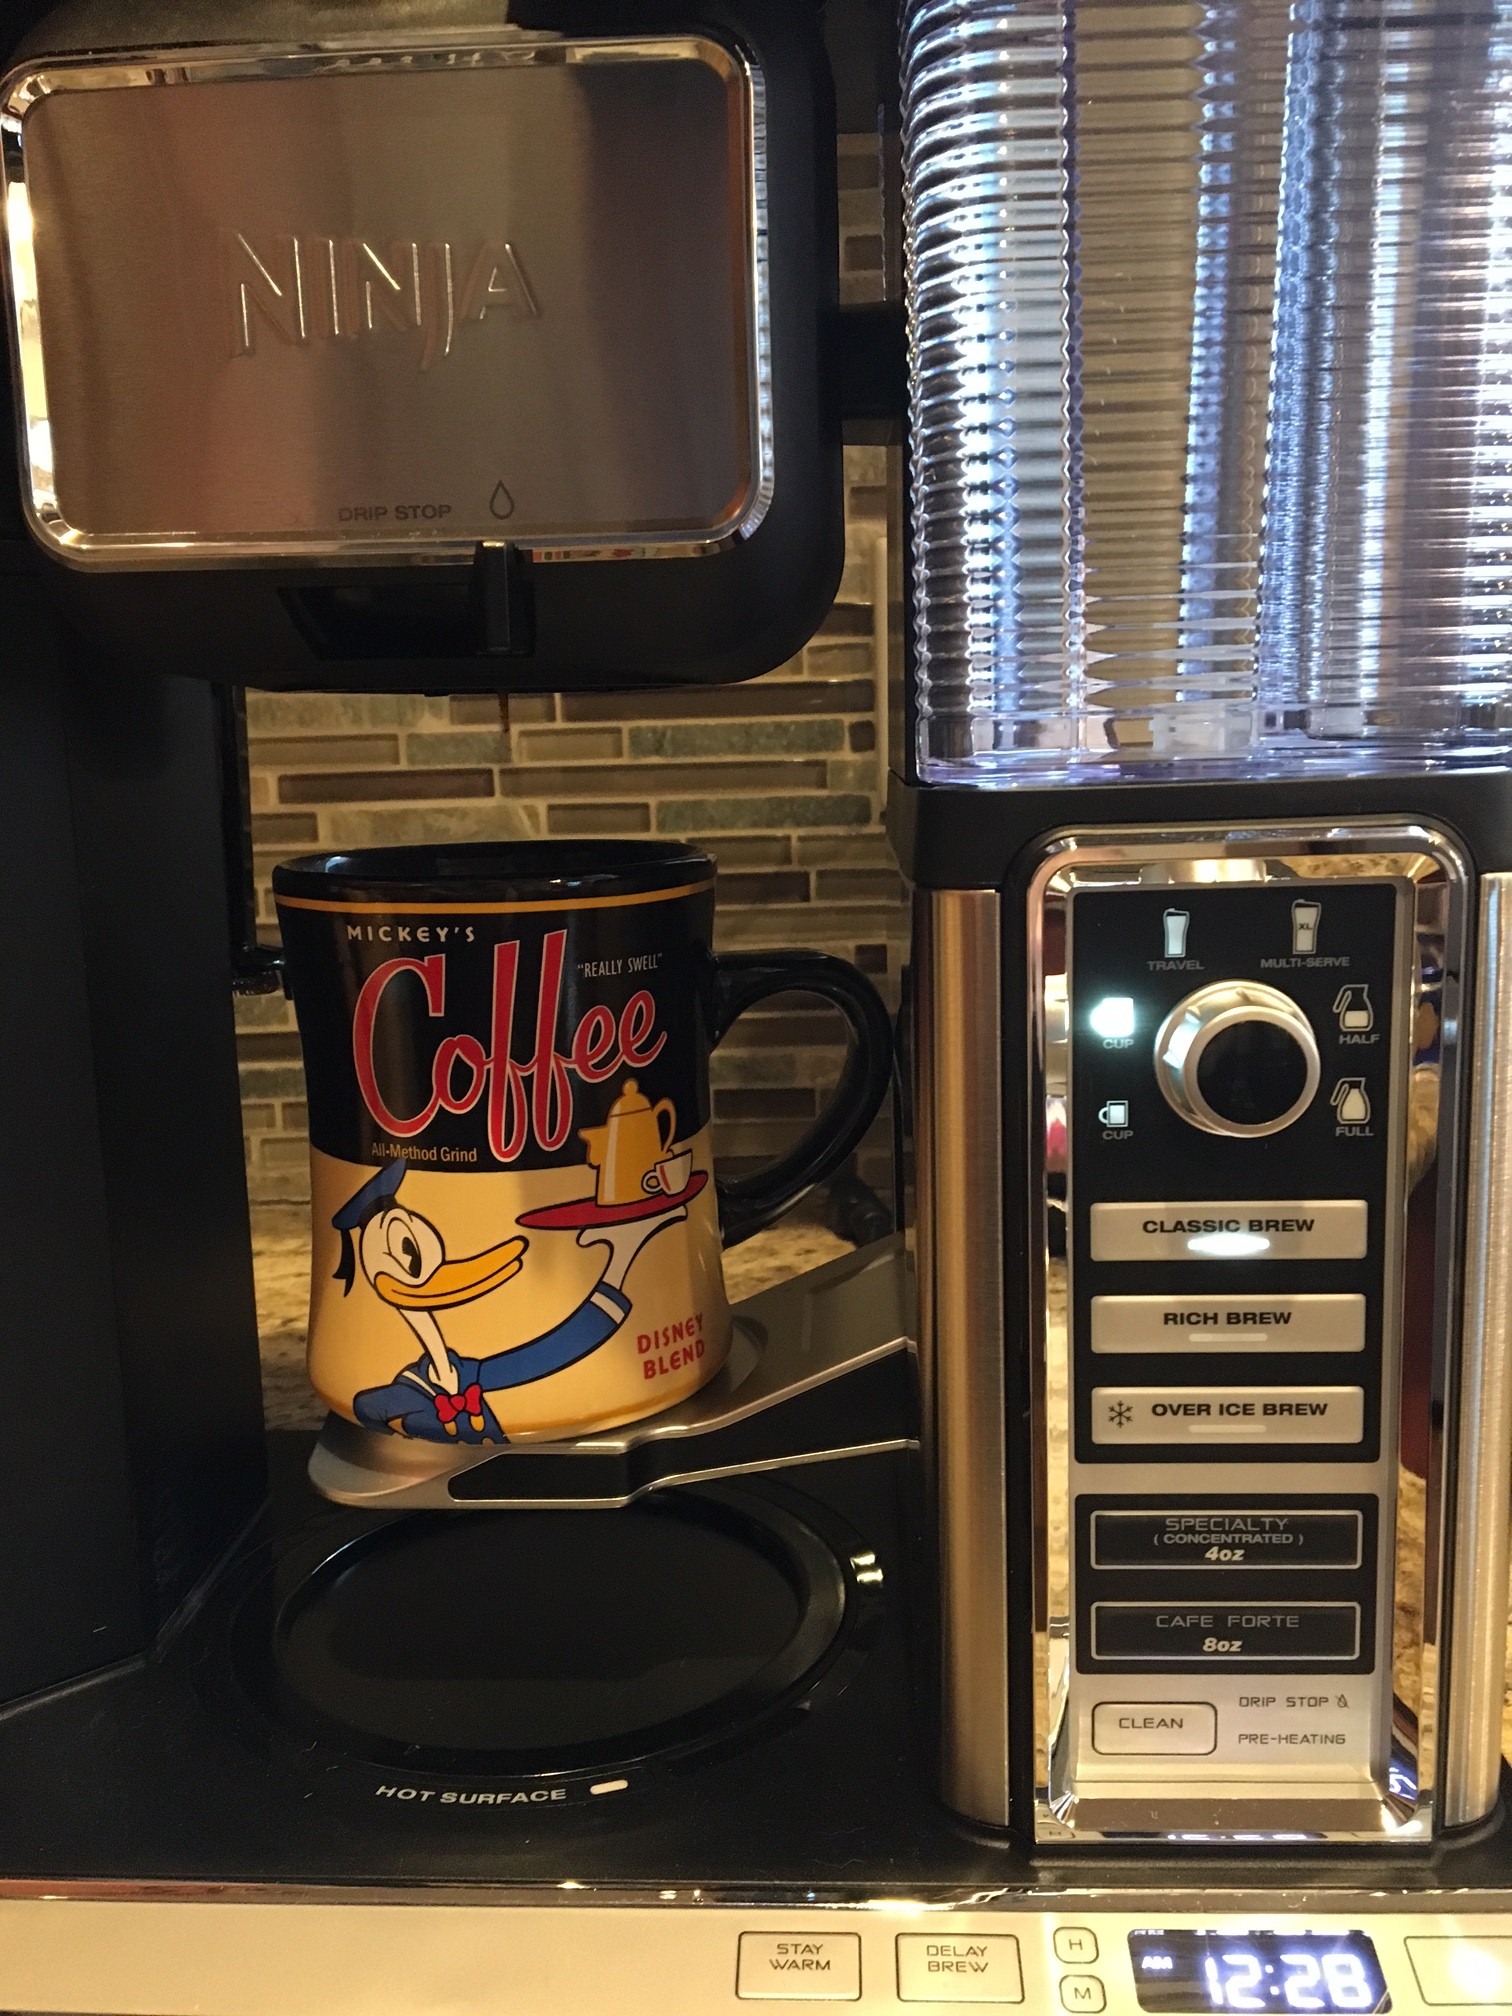 Ninja Coffee Bar™ Review